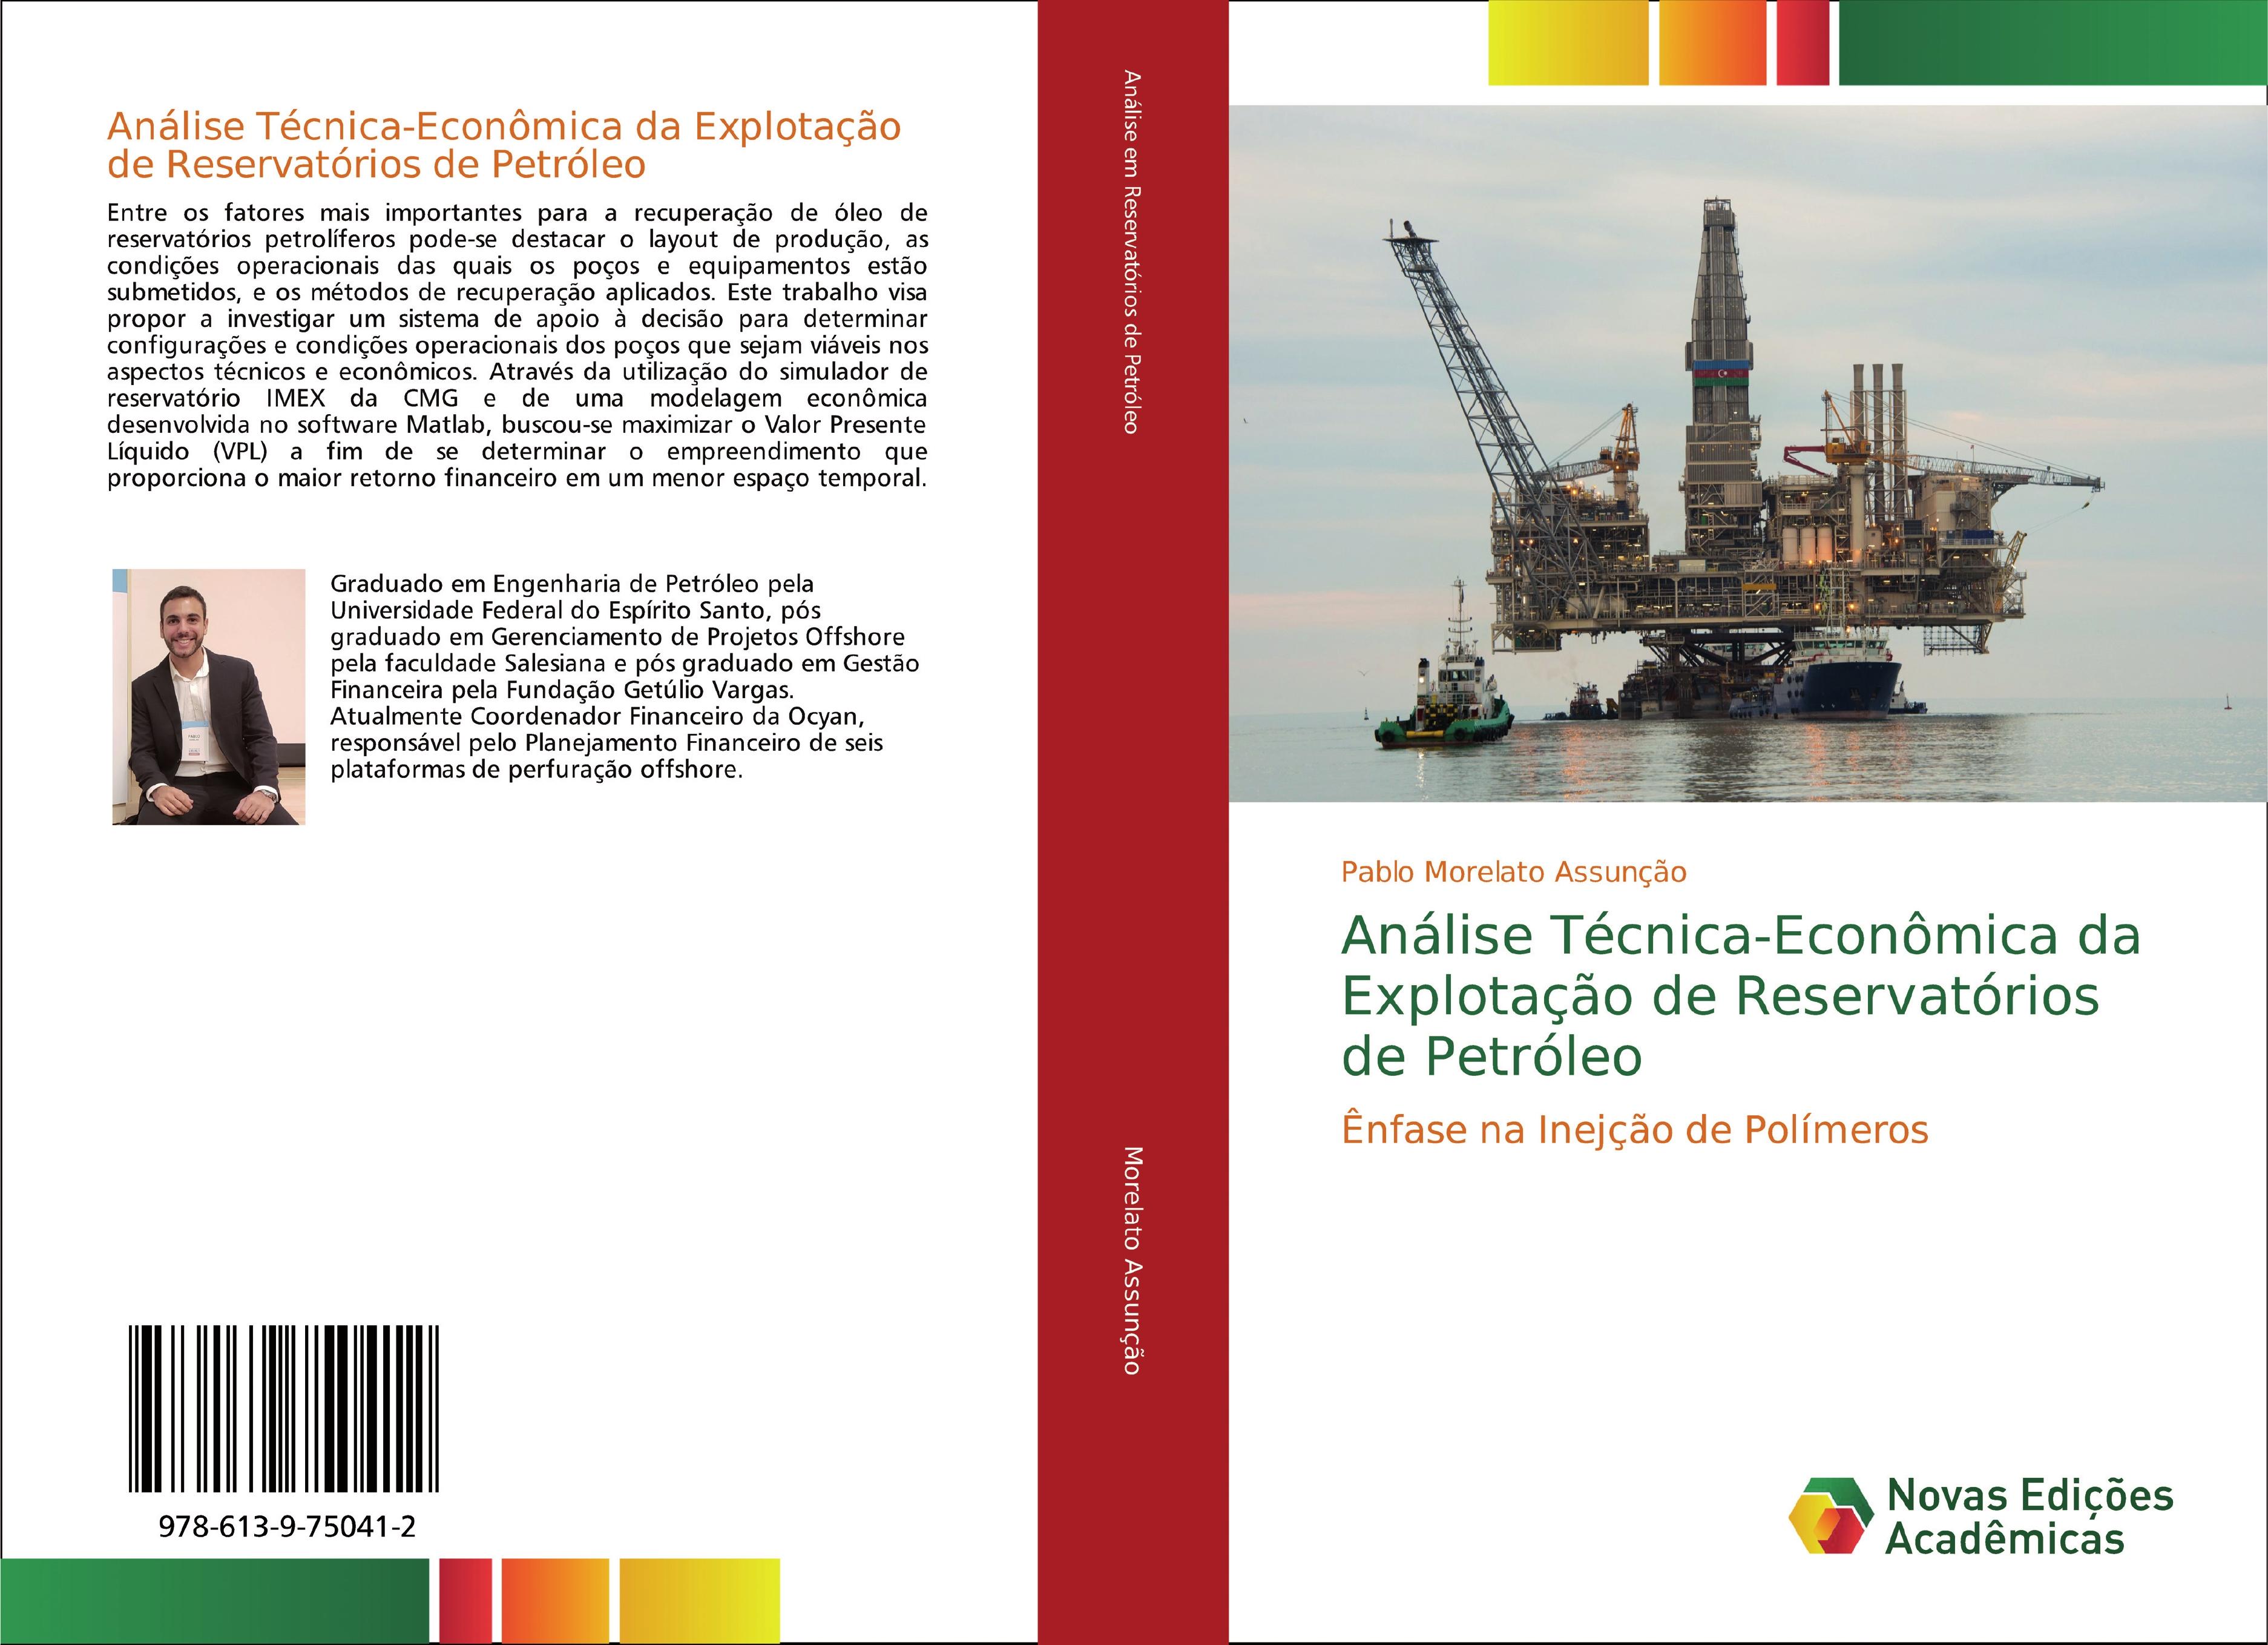 Análise Técnica-Econômica da Explotação de Reservatórios de Petróleo - Pablo Morelato Assunção